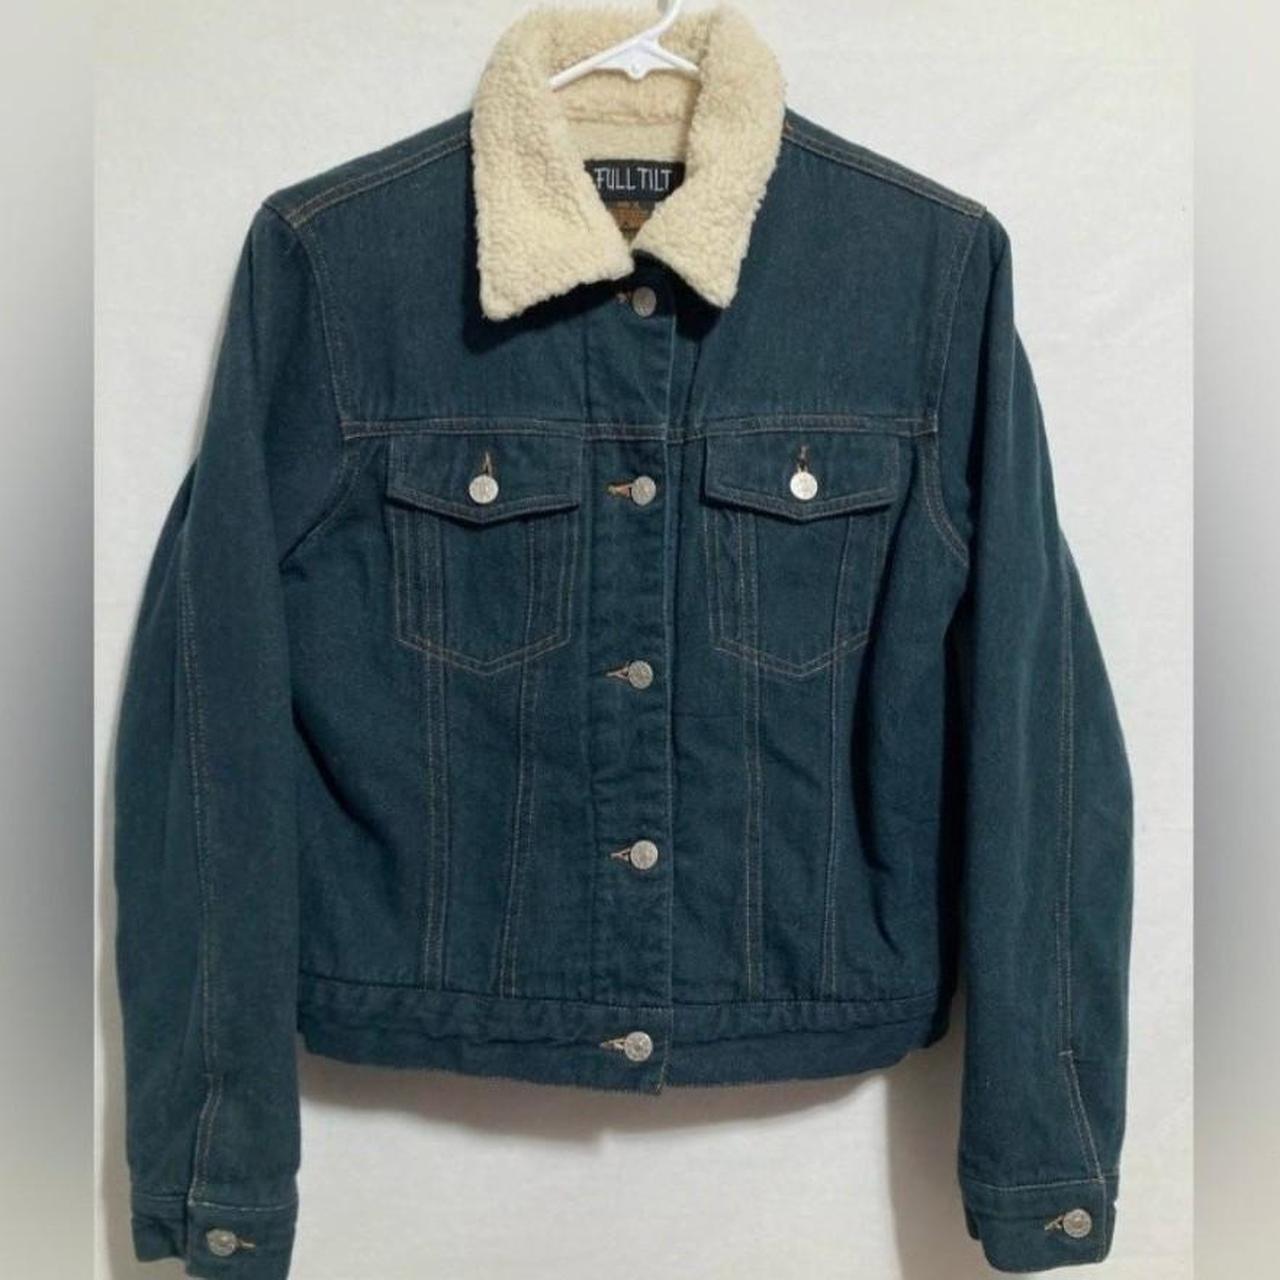 Sherpa Lined Denim Jacket 70s Vintage Size Large Silver Spur Western Wear  Brand Distressed Blue Jean Coat Cowboy Outerwear Gear Streetwear - Etsy